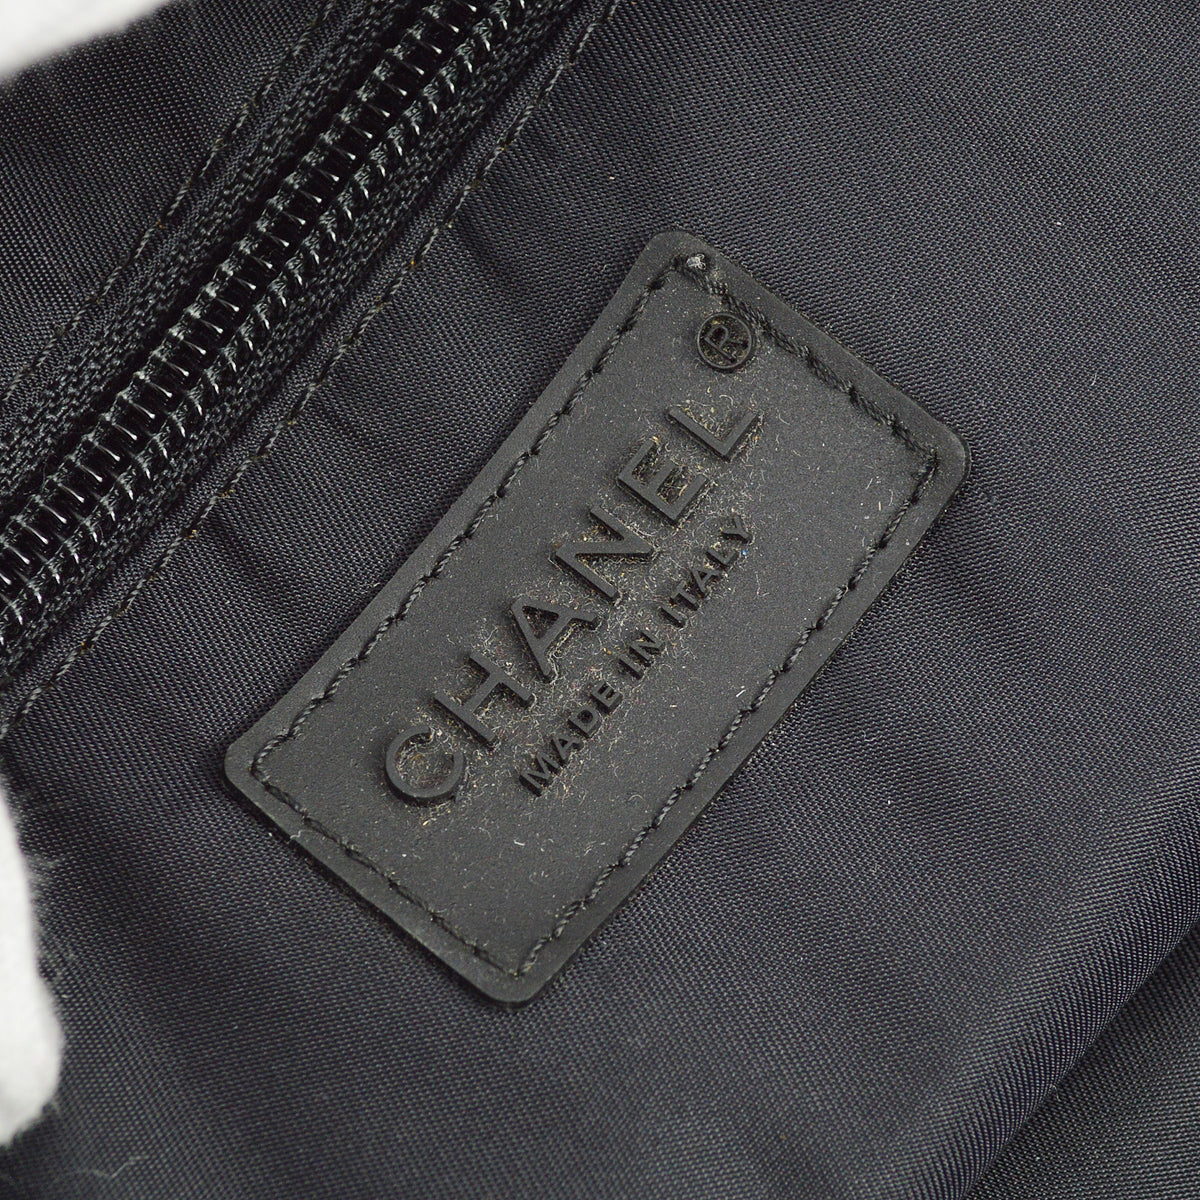 Chanel Black Nylon Sport Line Duffle Gym Bag